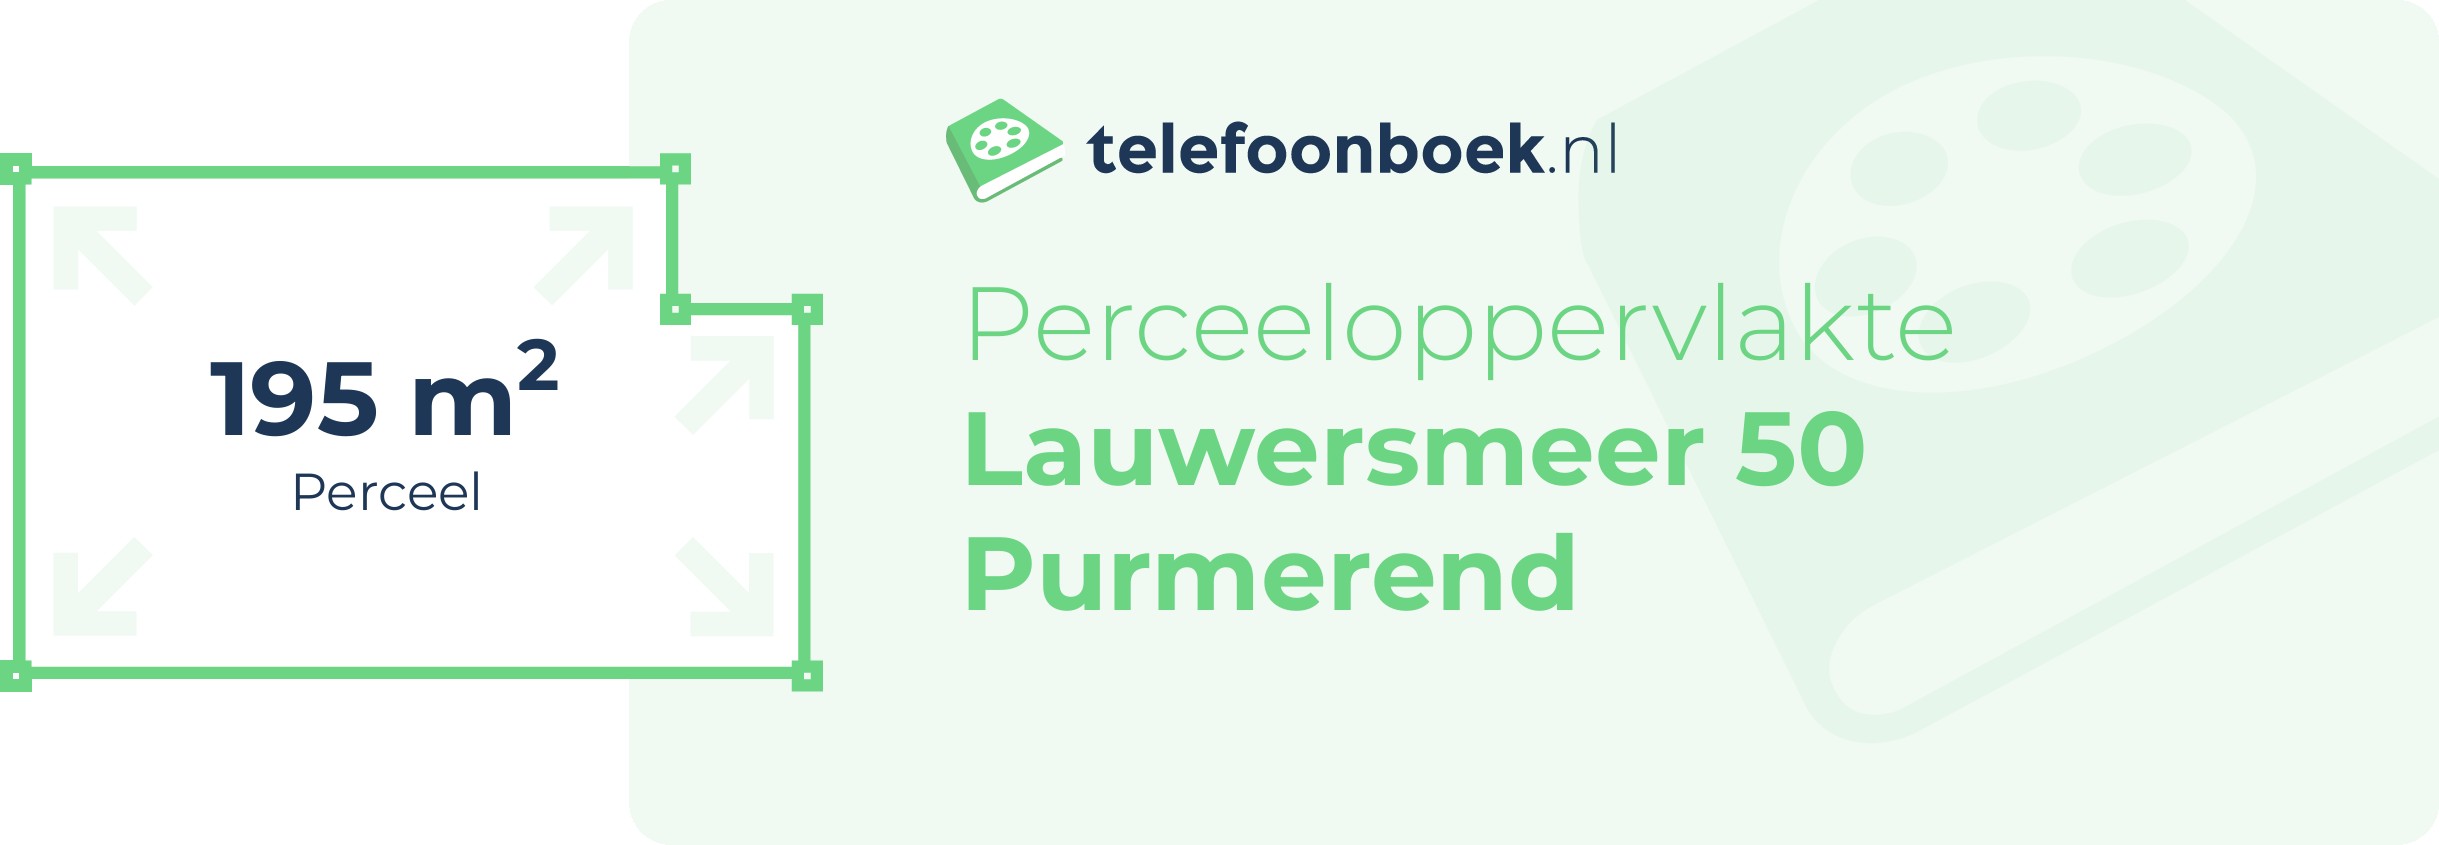 Perceeloppervlakte Lauwersmeer 50 Purmerend